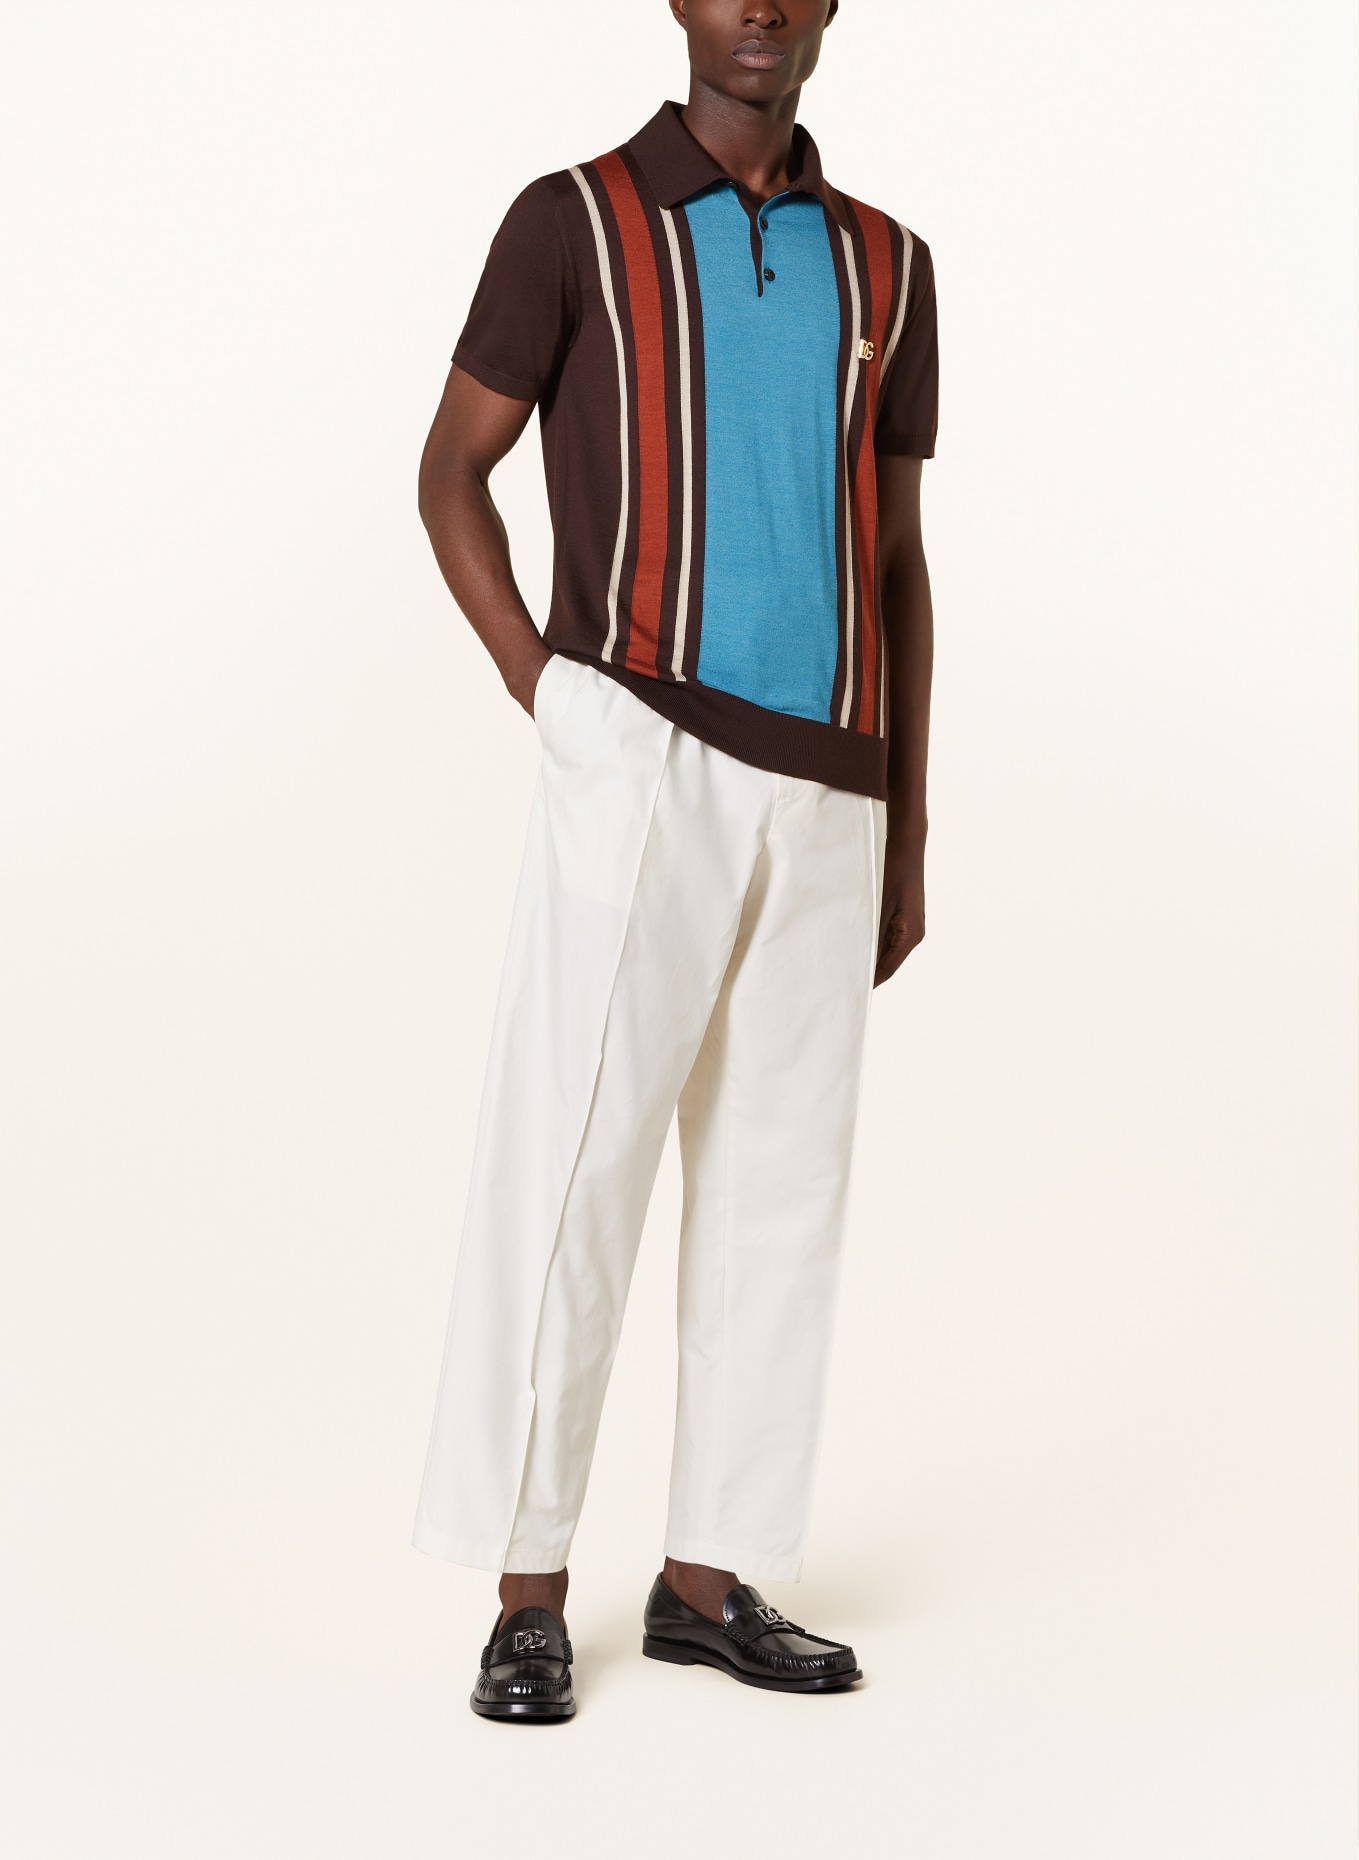 DOLCE & GABBANA Strick-Poloshirt Slim Fit aus Cashmere mit Seide, Farbe: BRAUN/ BLAU/ ORANGE (Bild 2)